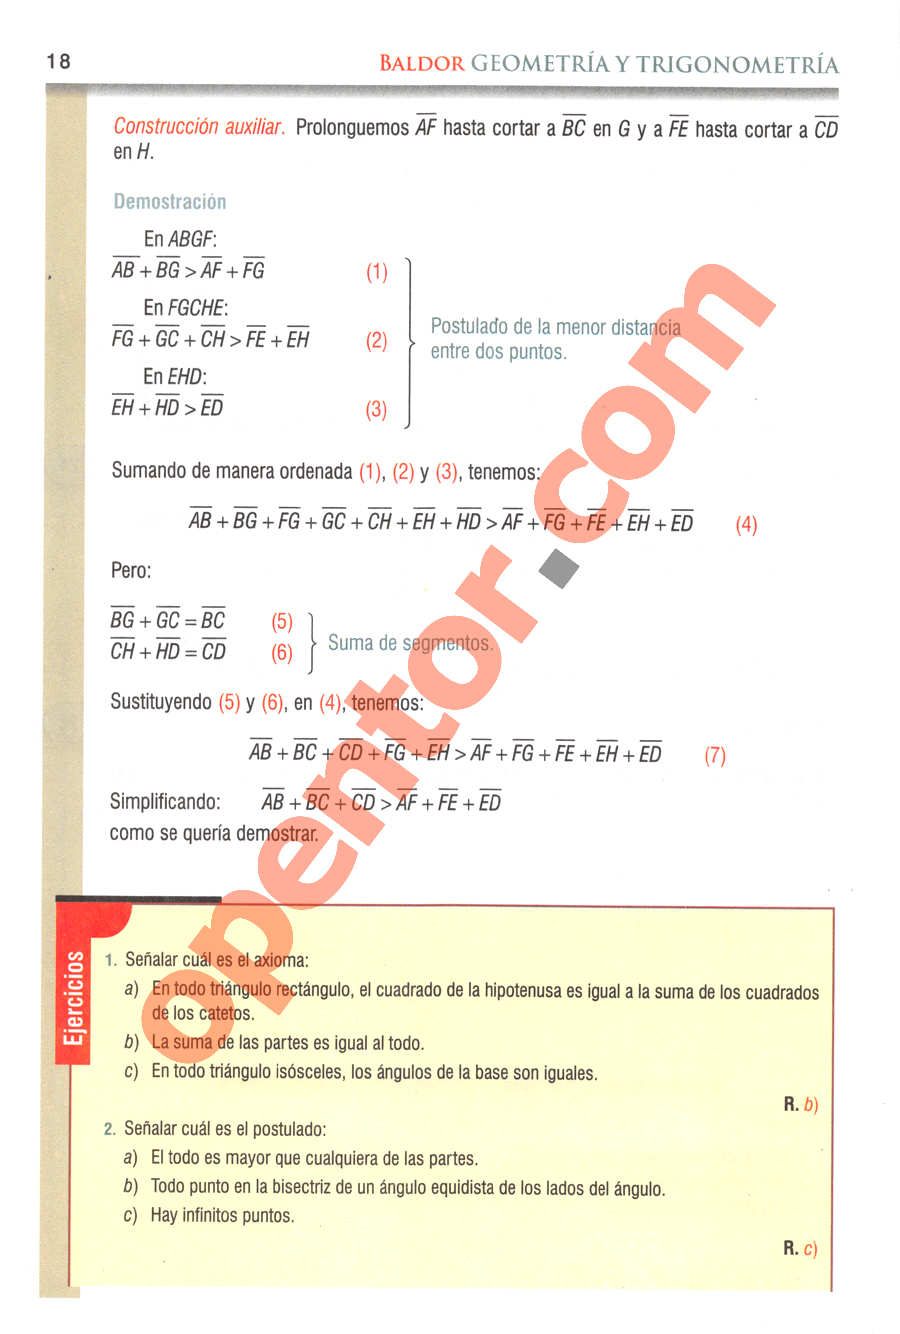 Geometría y Trigonometría de Baldor - Página 18